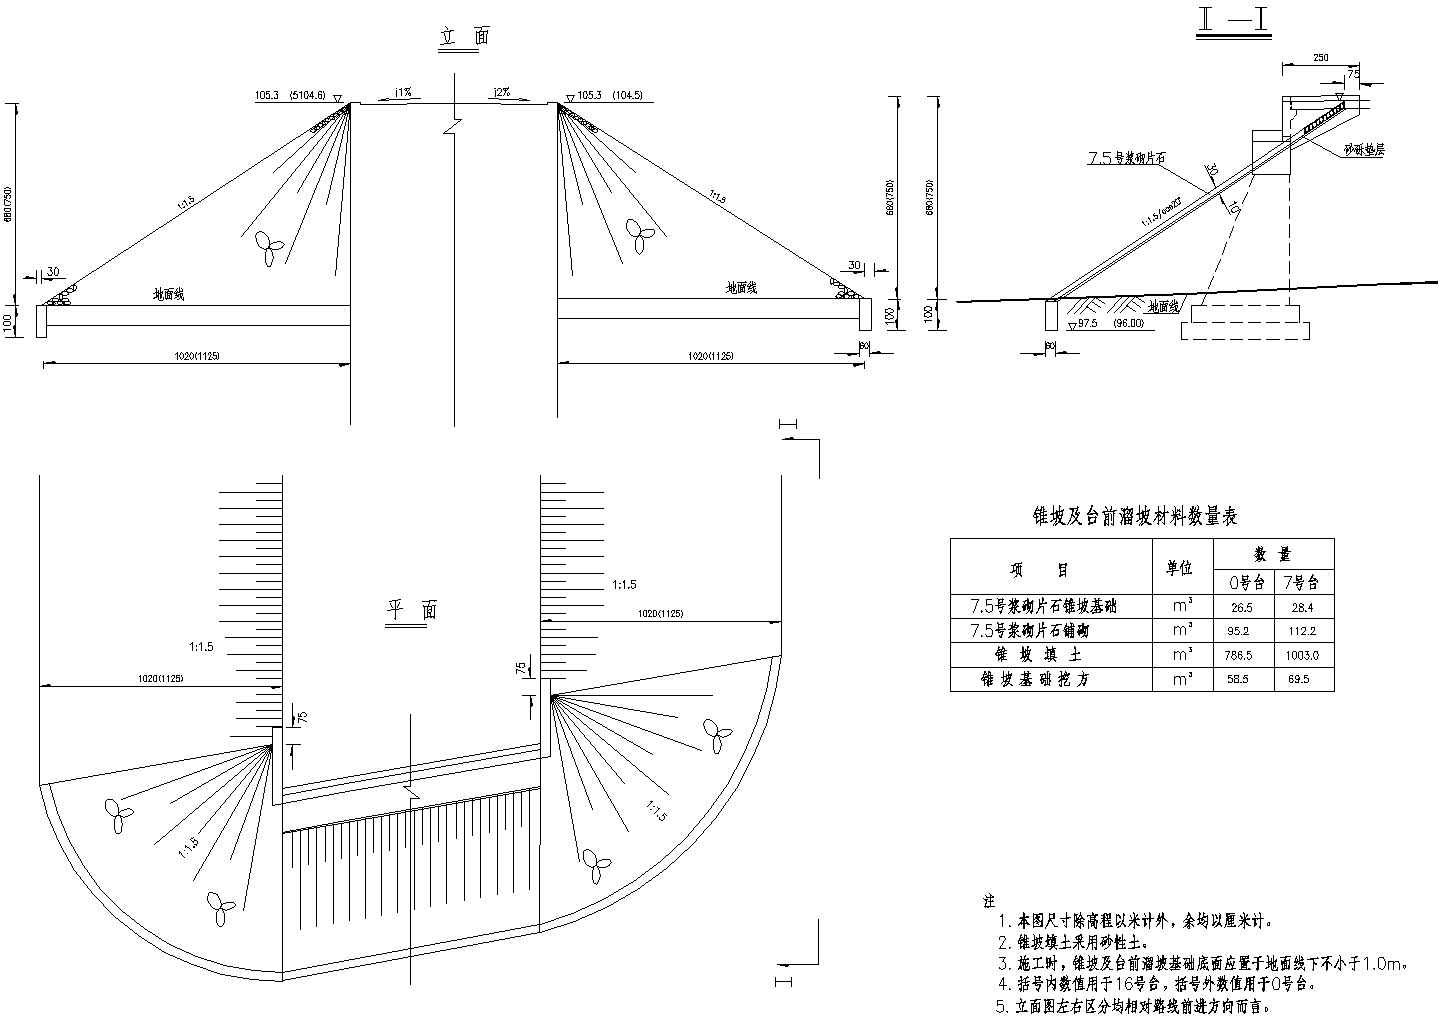 7x20m预应力混凝土空心板锥坡一般构造节点详图设计